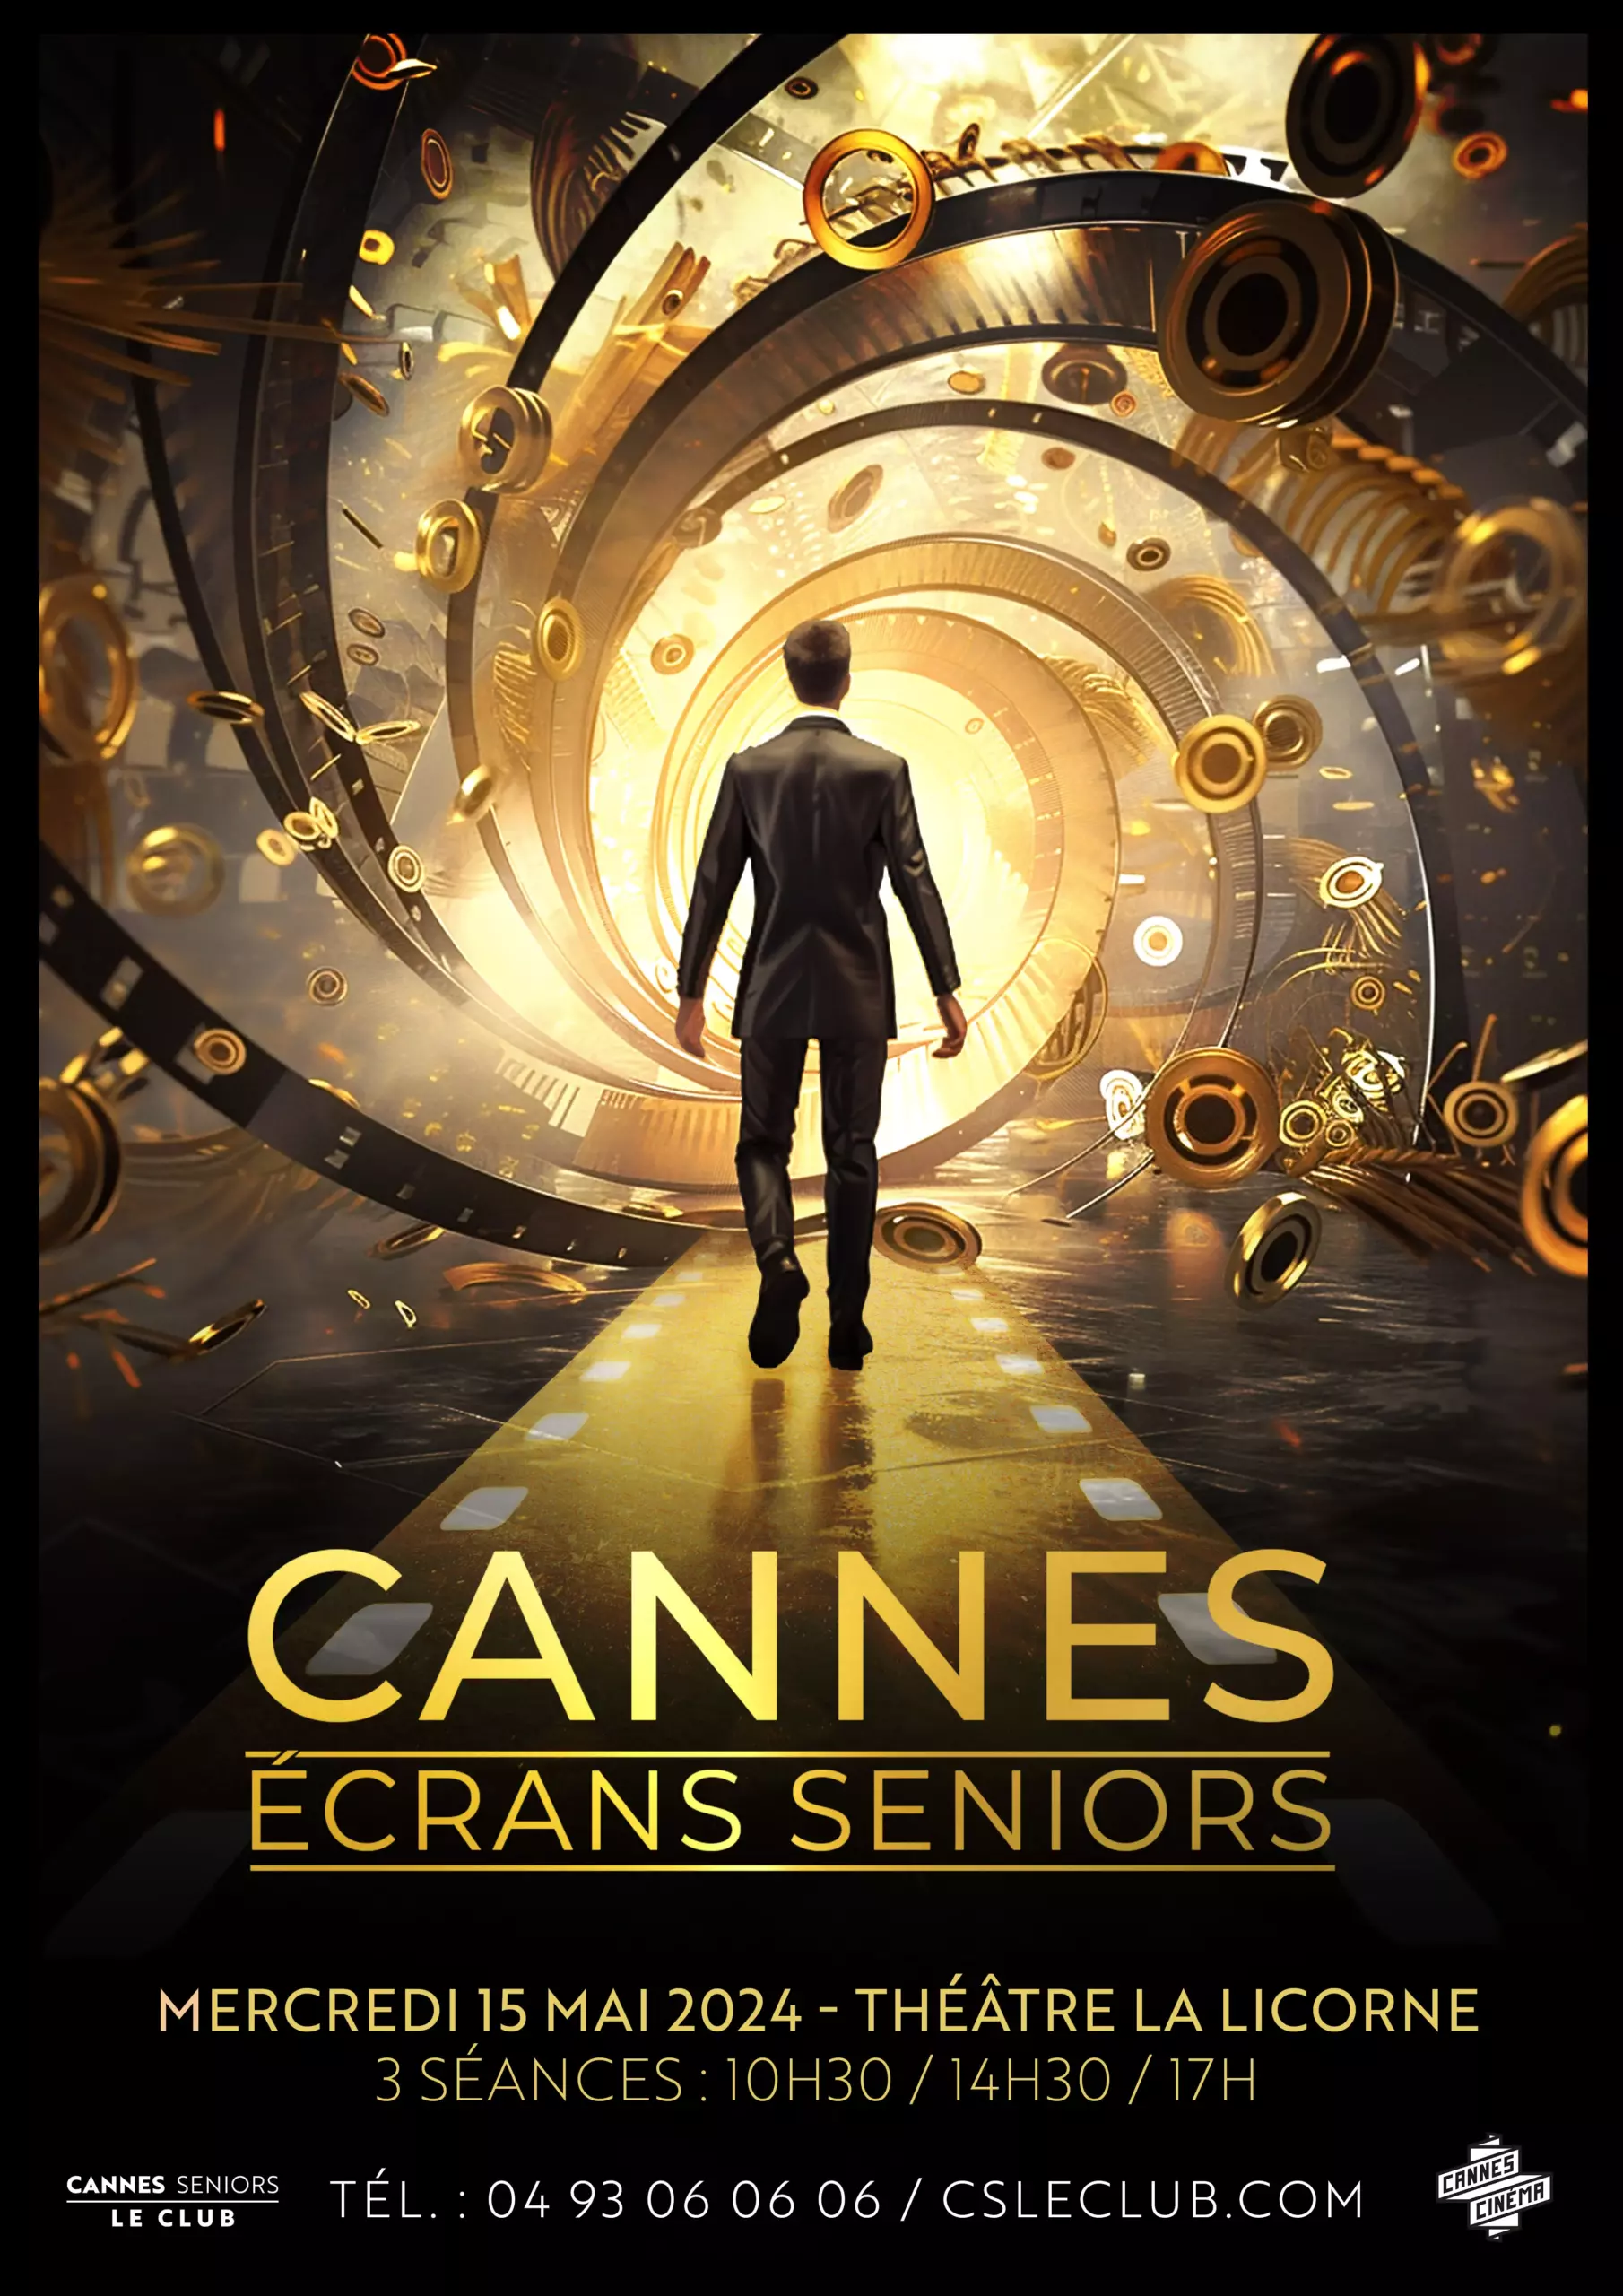 Cannes Ecrans Seniors